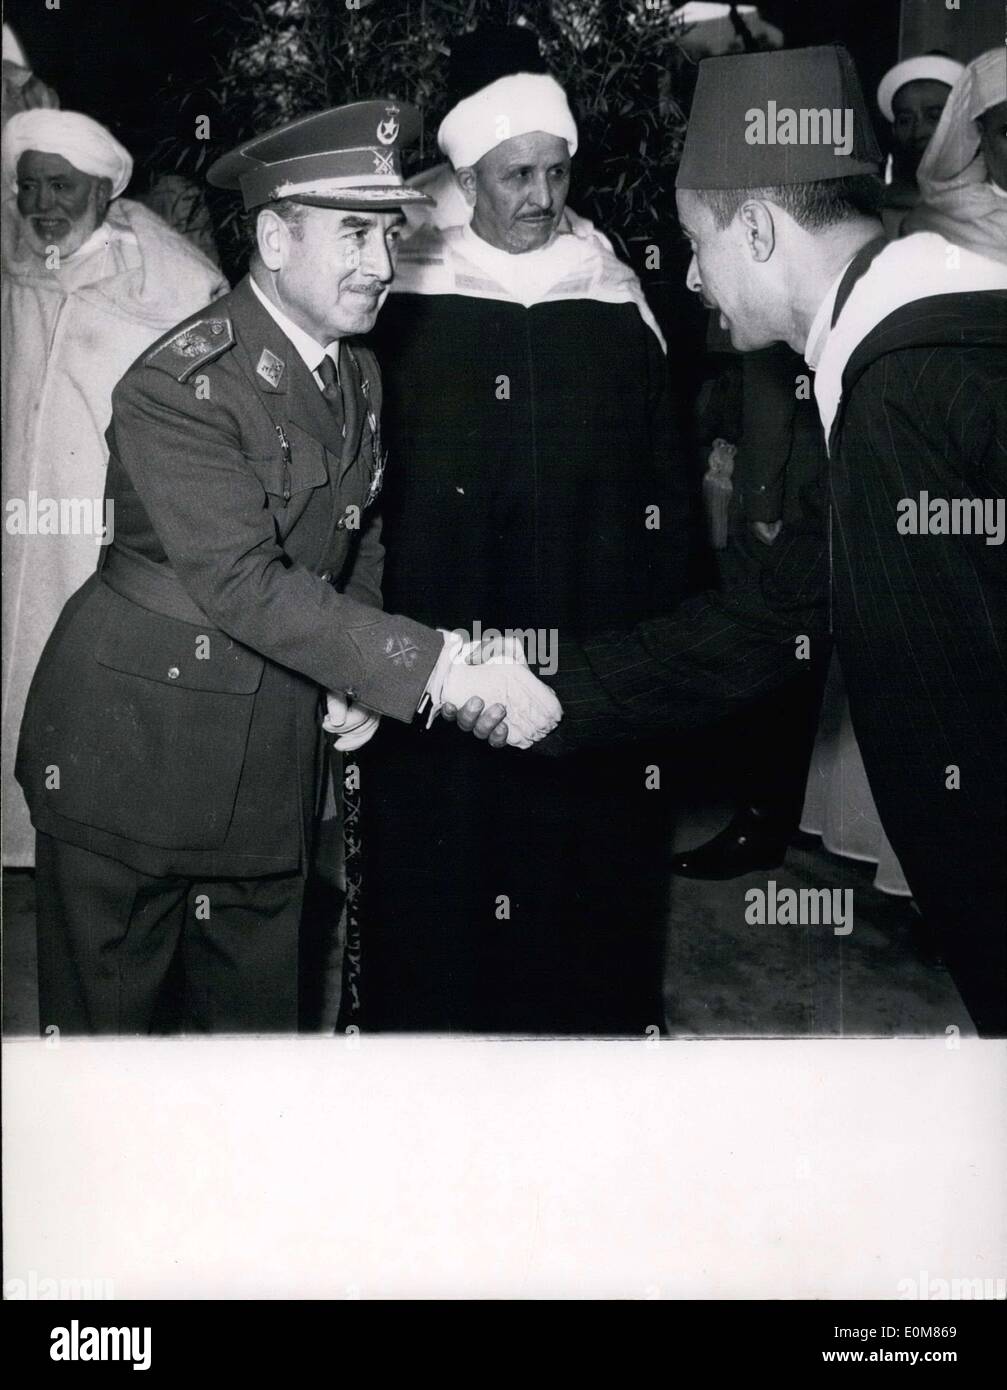 Gen 23, 1954 - Tetuan anti-dimostrazioni francese: Spagnolo alto commissario generale Gardia Valino scuote le mani con un marocchino Foto Stock